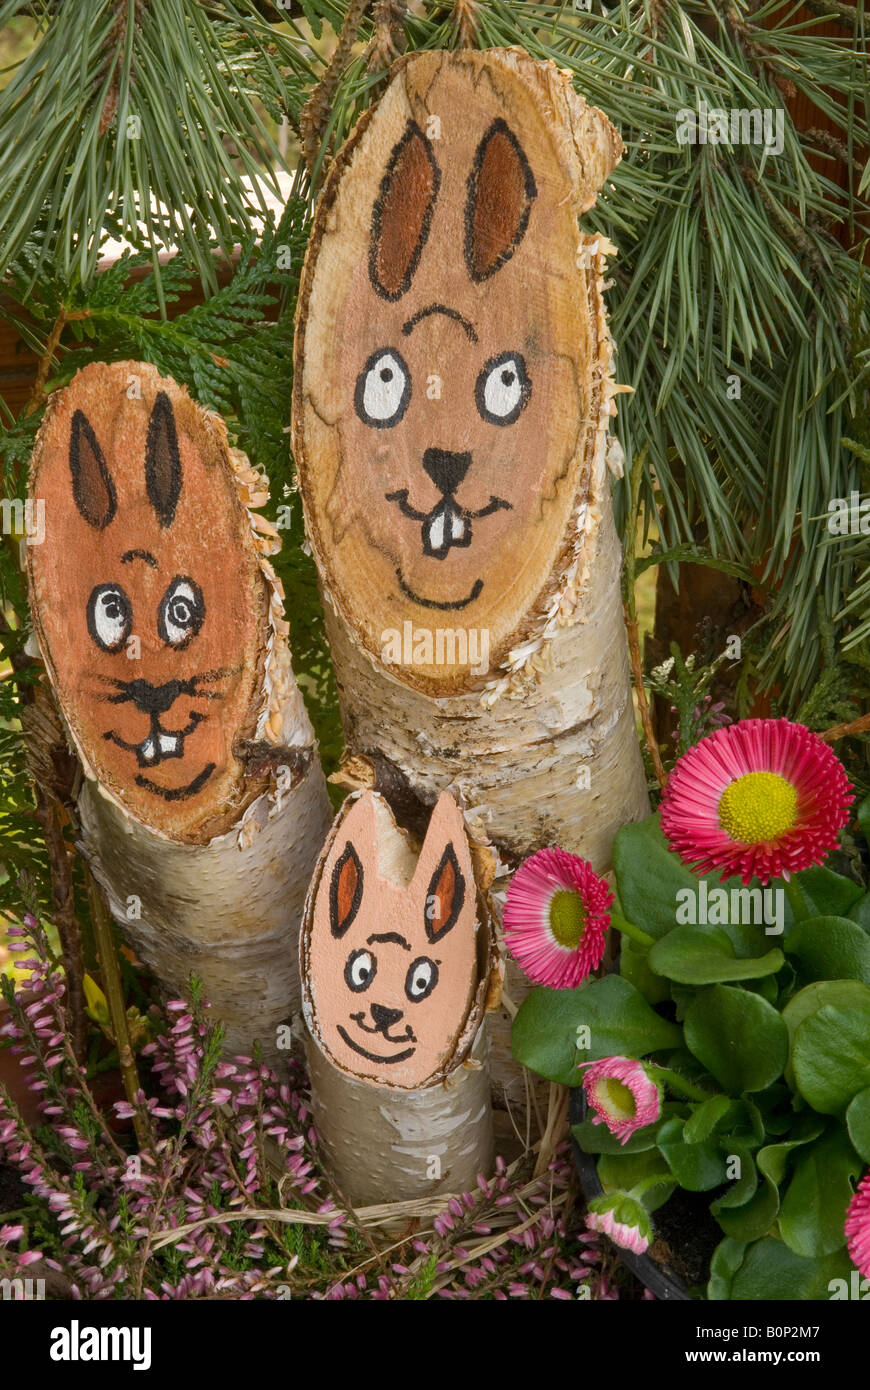 Osterhase Gesichter gemalt auf Baumstämmen Stockfotografie - Alamy